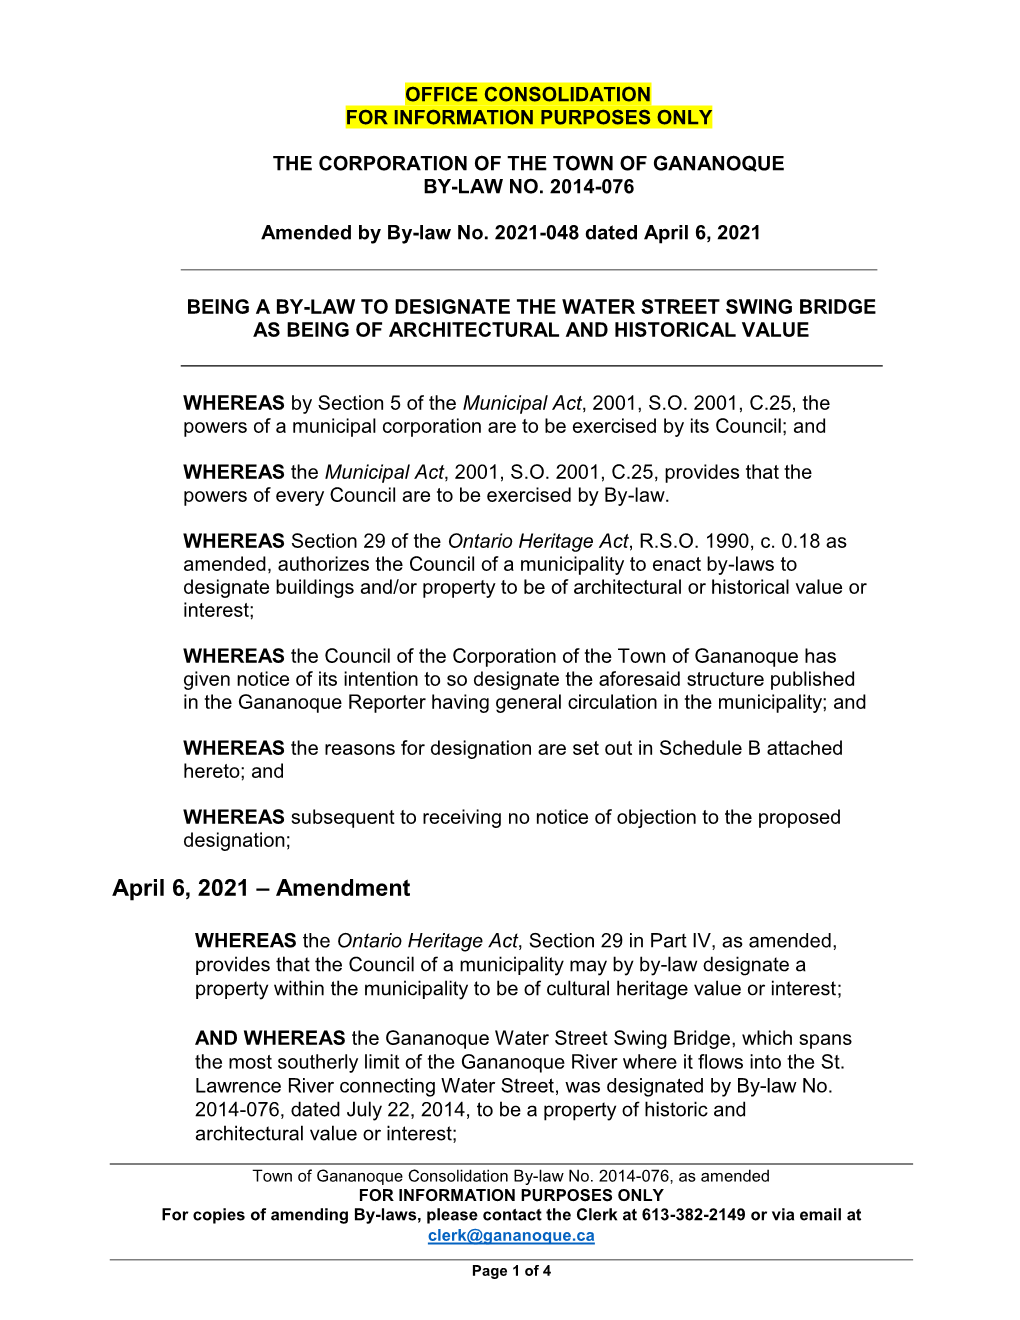 April 6, 2021 – Amendment